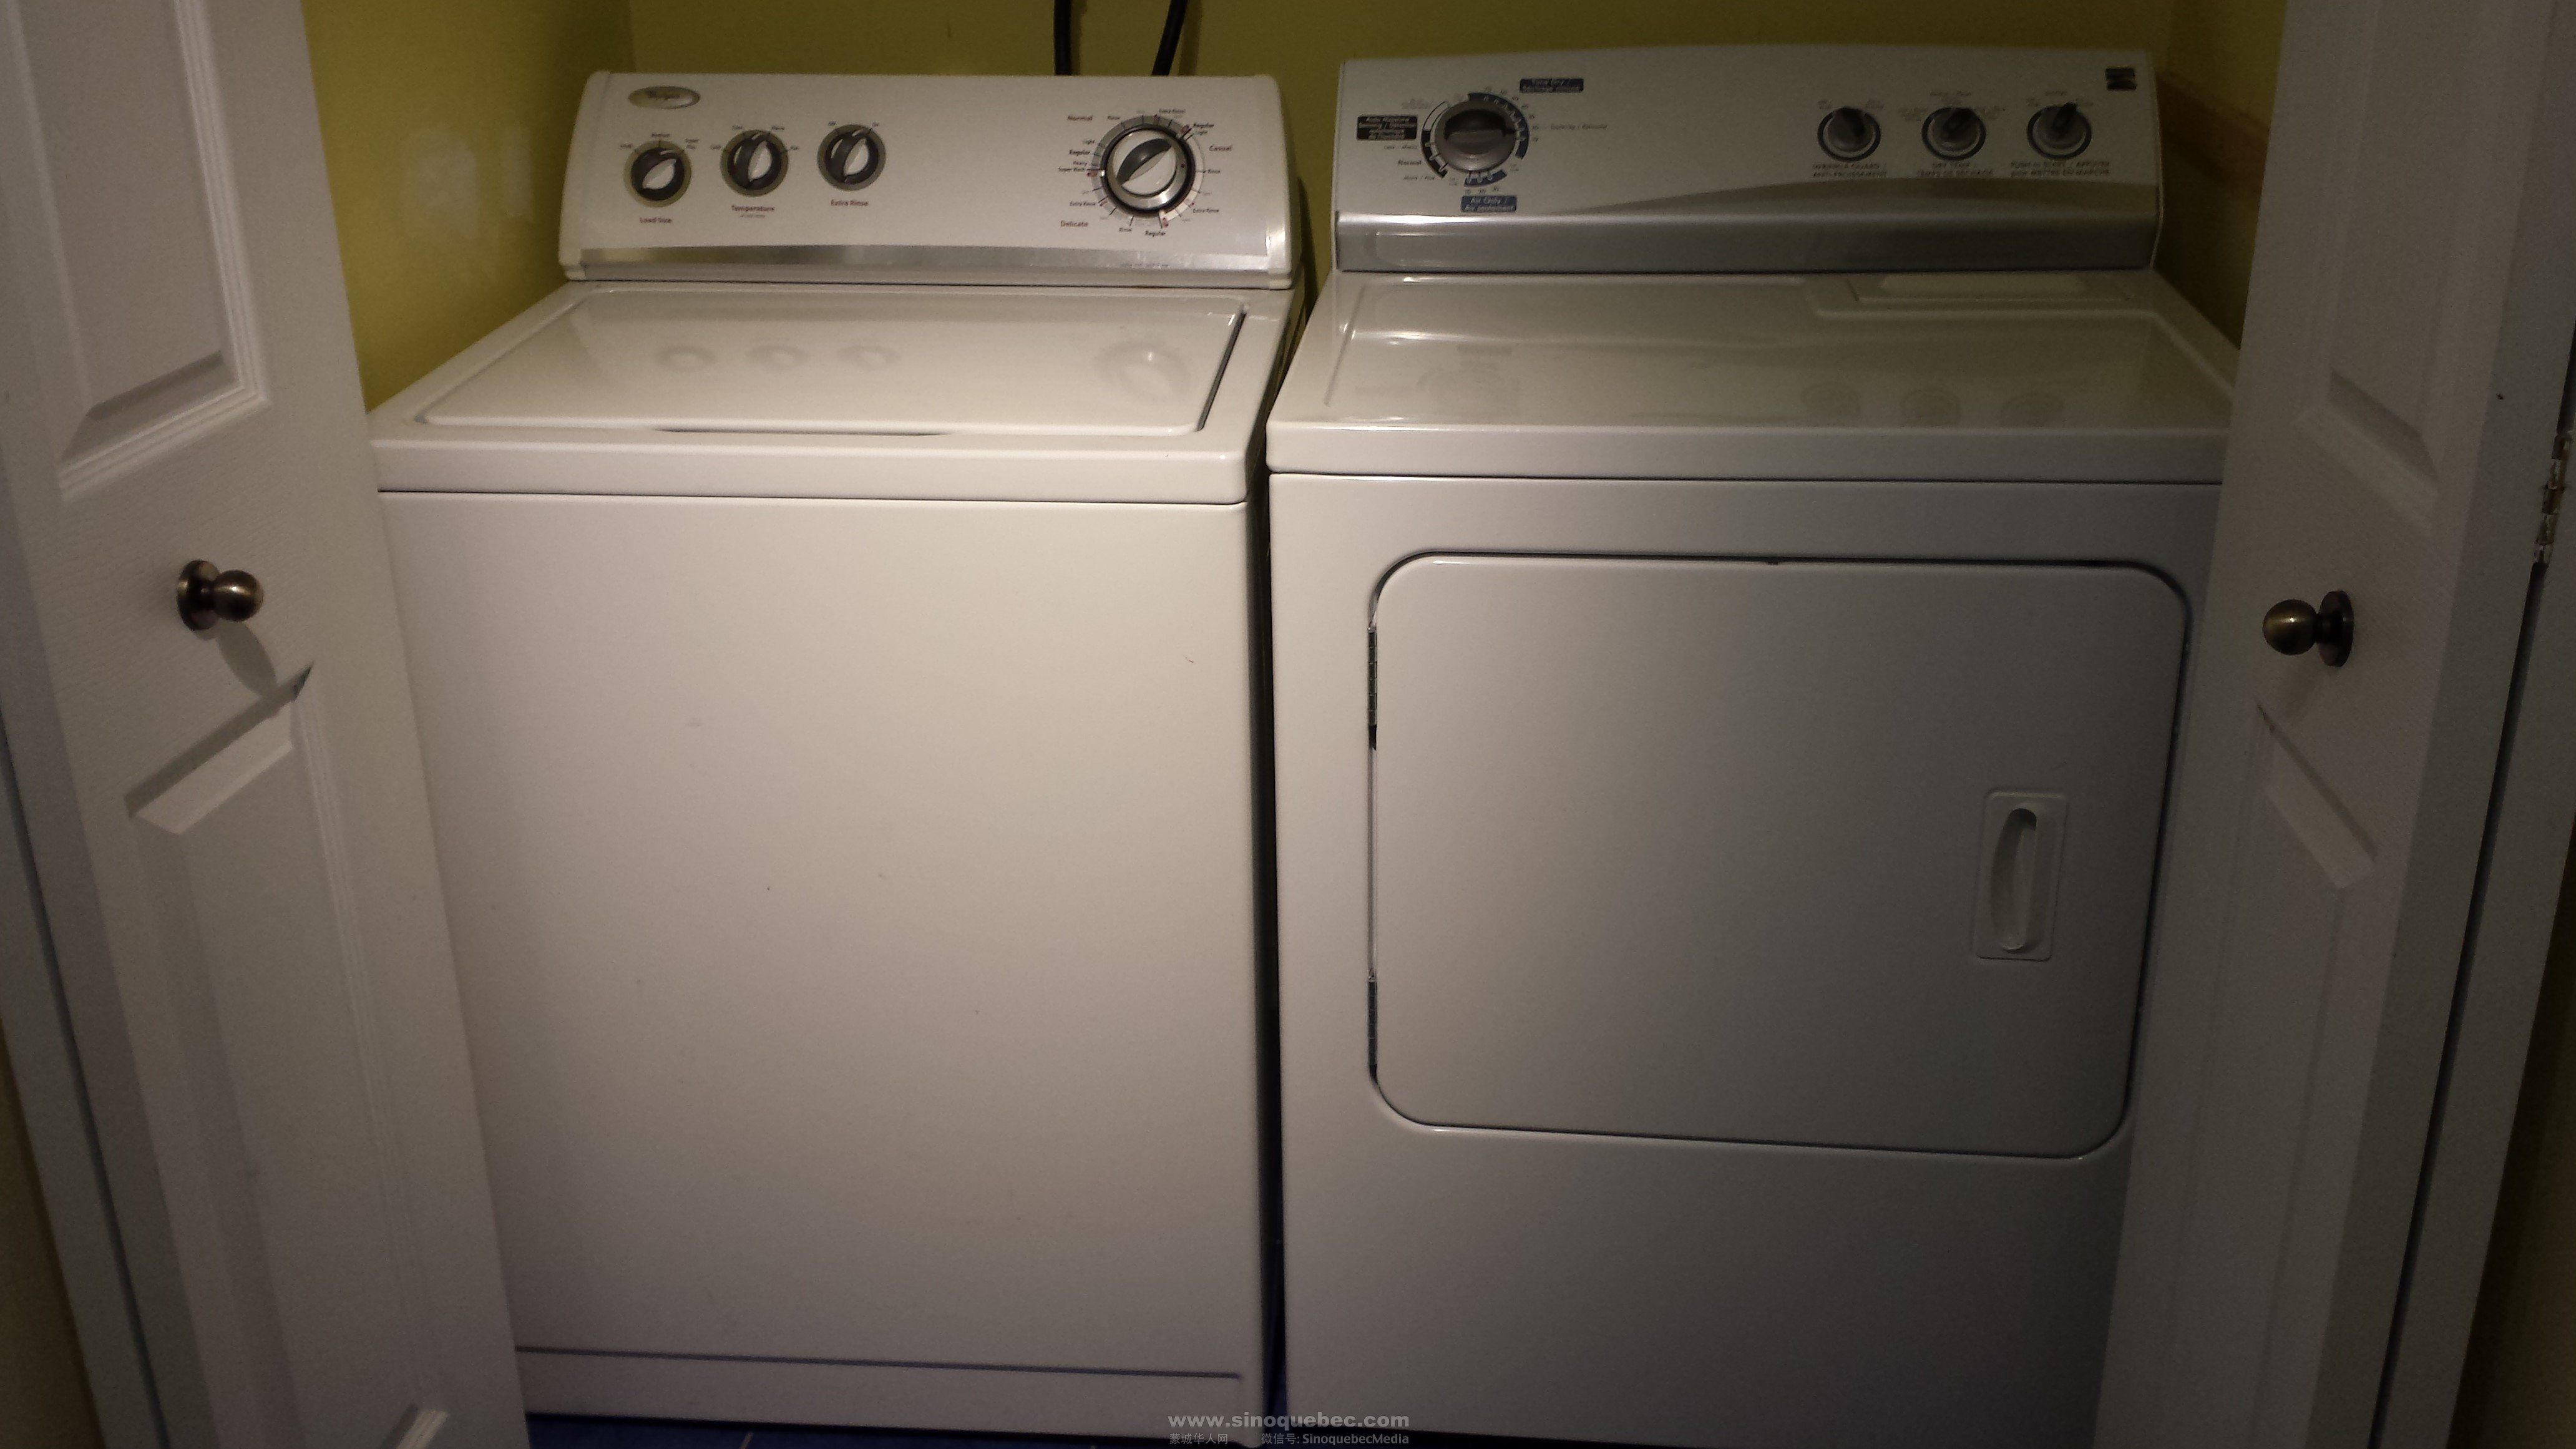 Washing machine2.jpg